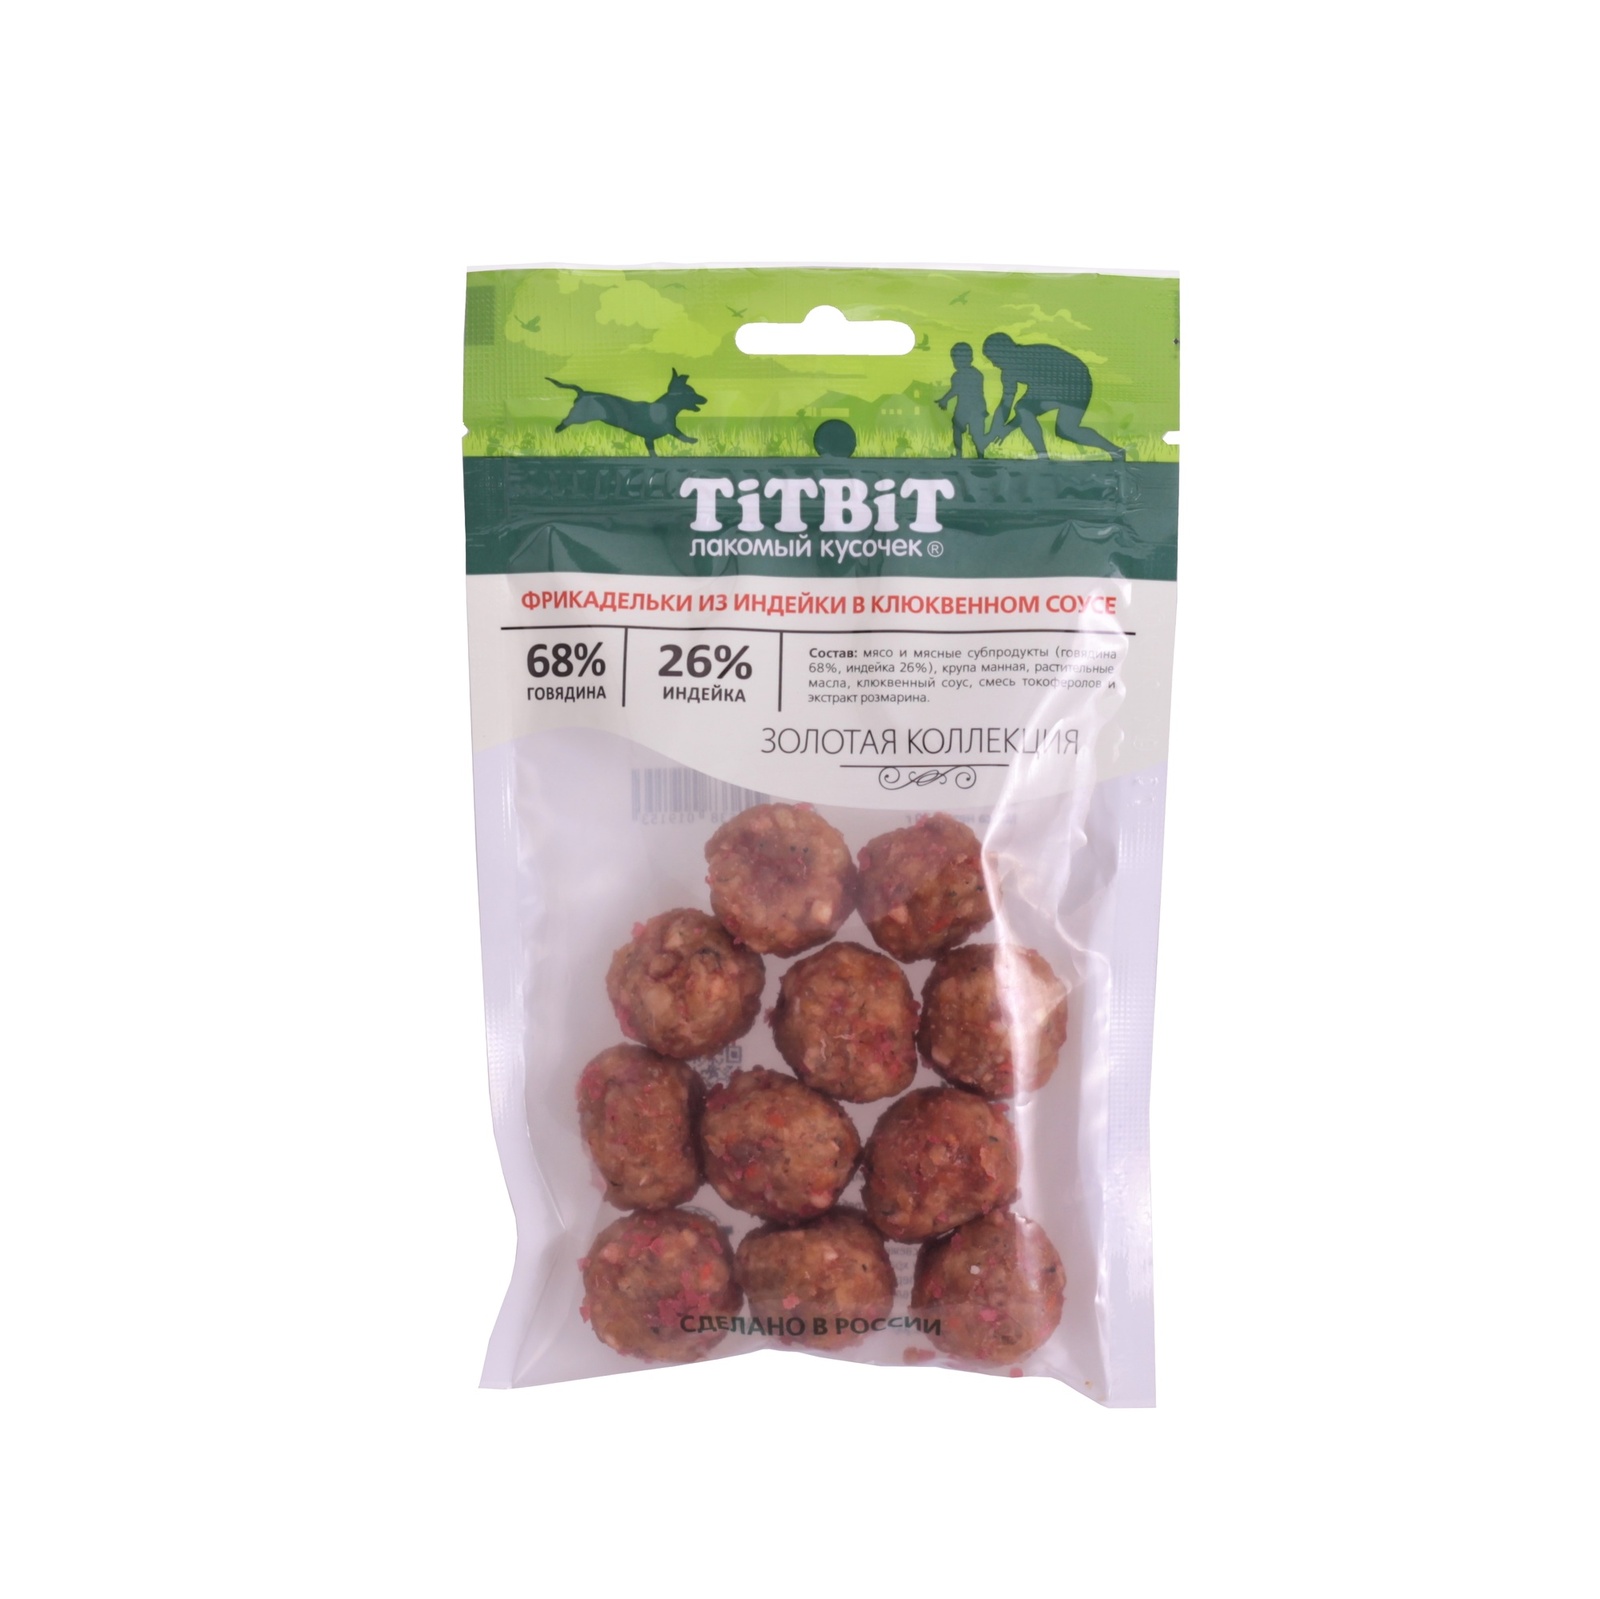 TiTBiT TiTBiT фрикадельки из индейки в клюквенном соусе для собак Золотая коллекция (70 г)